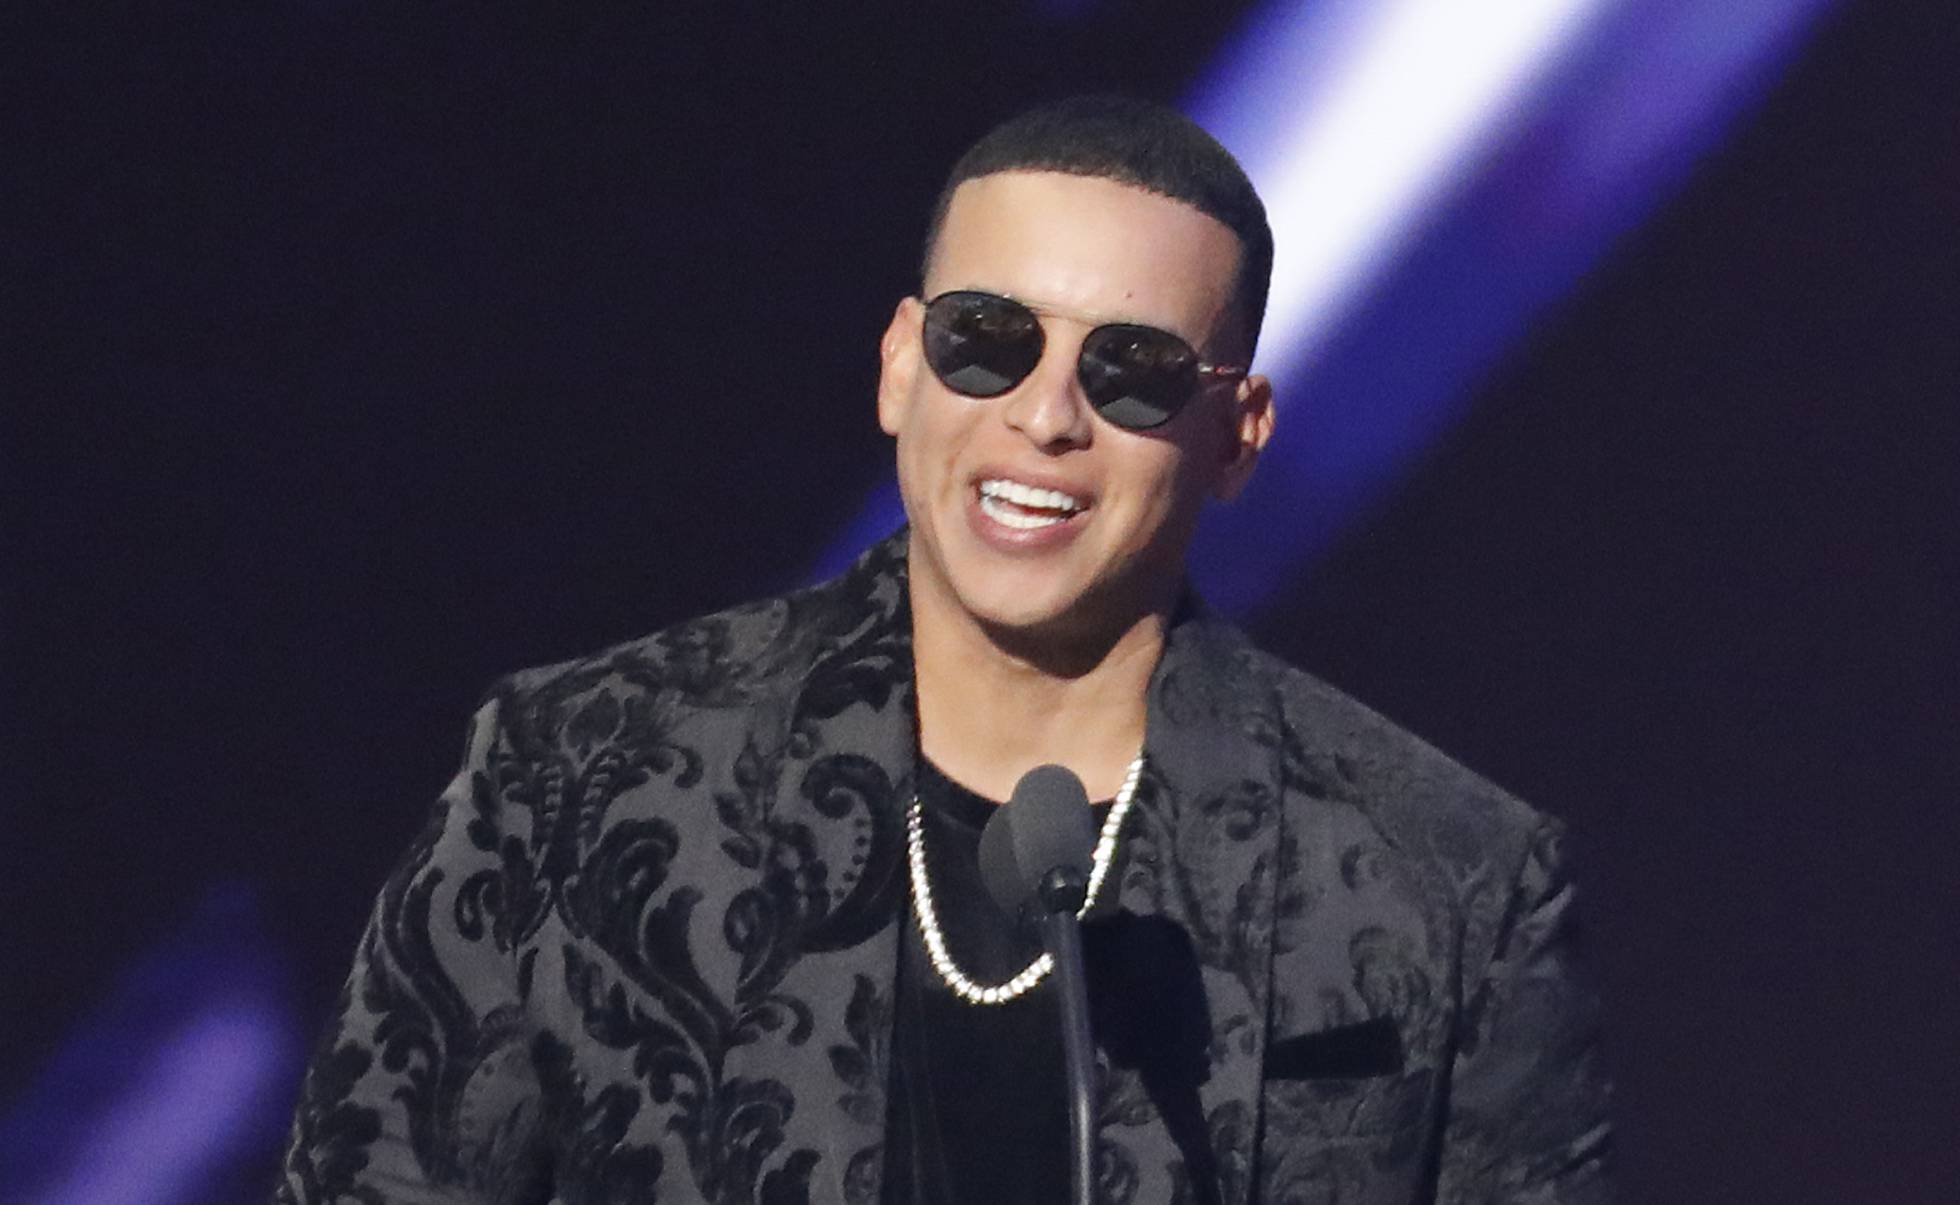 Reportaron disturbios al ingresar a concierto de Daddy Yankee en Chile (Video)